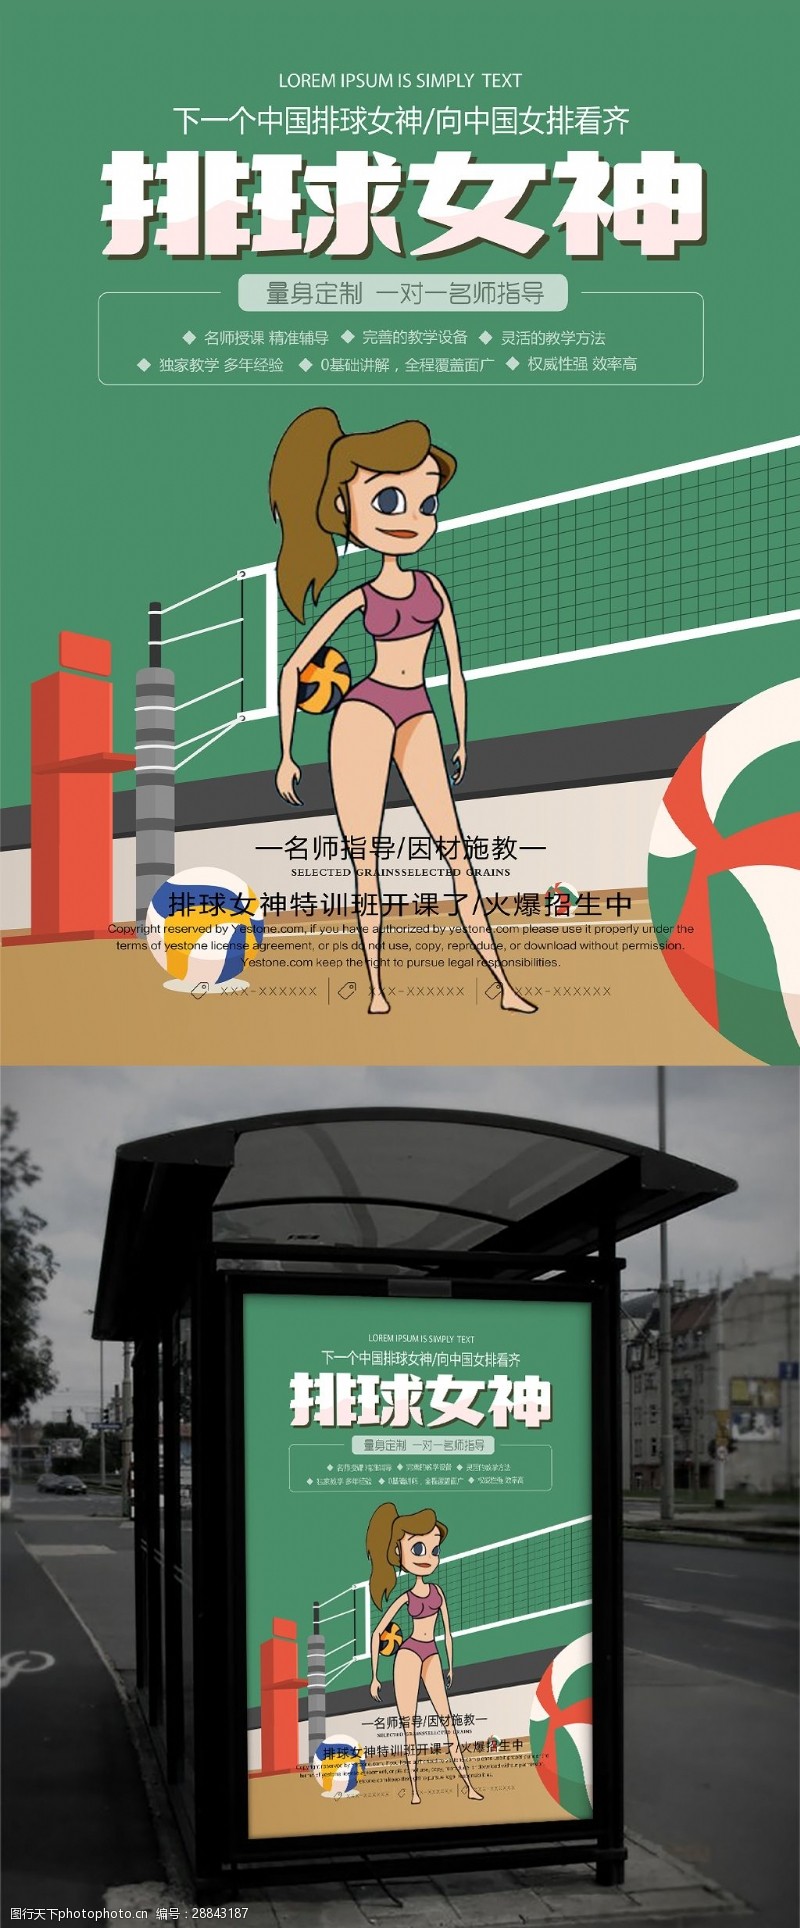 排球赛清新简约排球女神体育运动宣传海报设计